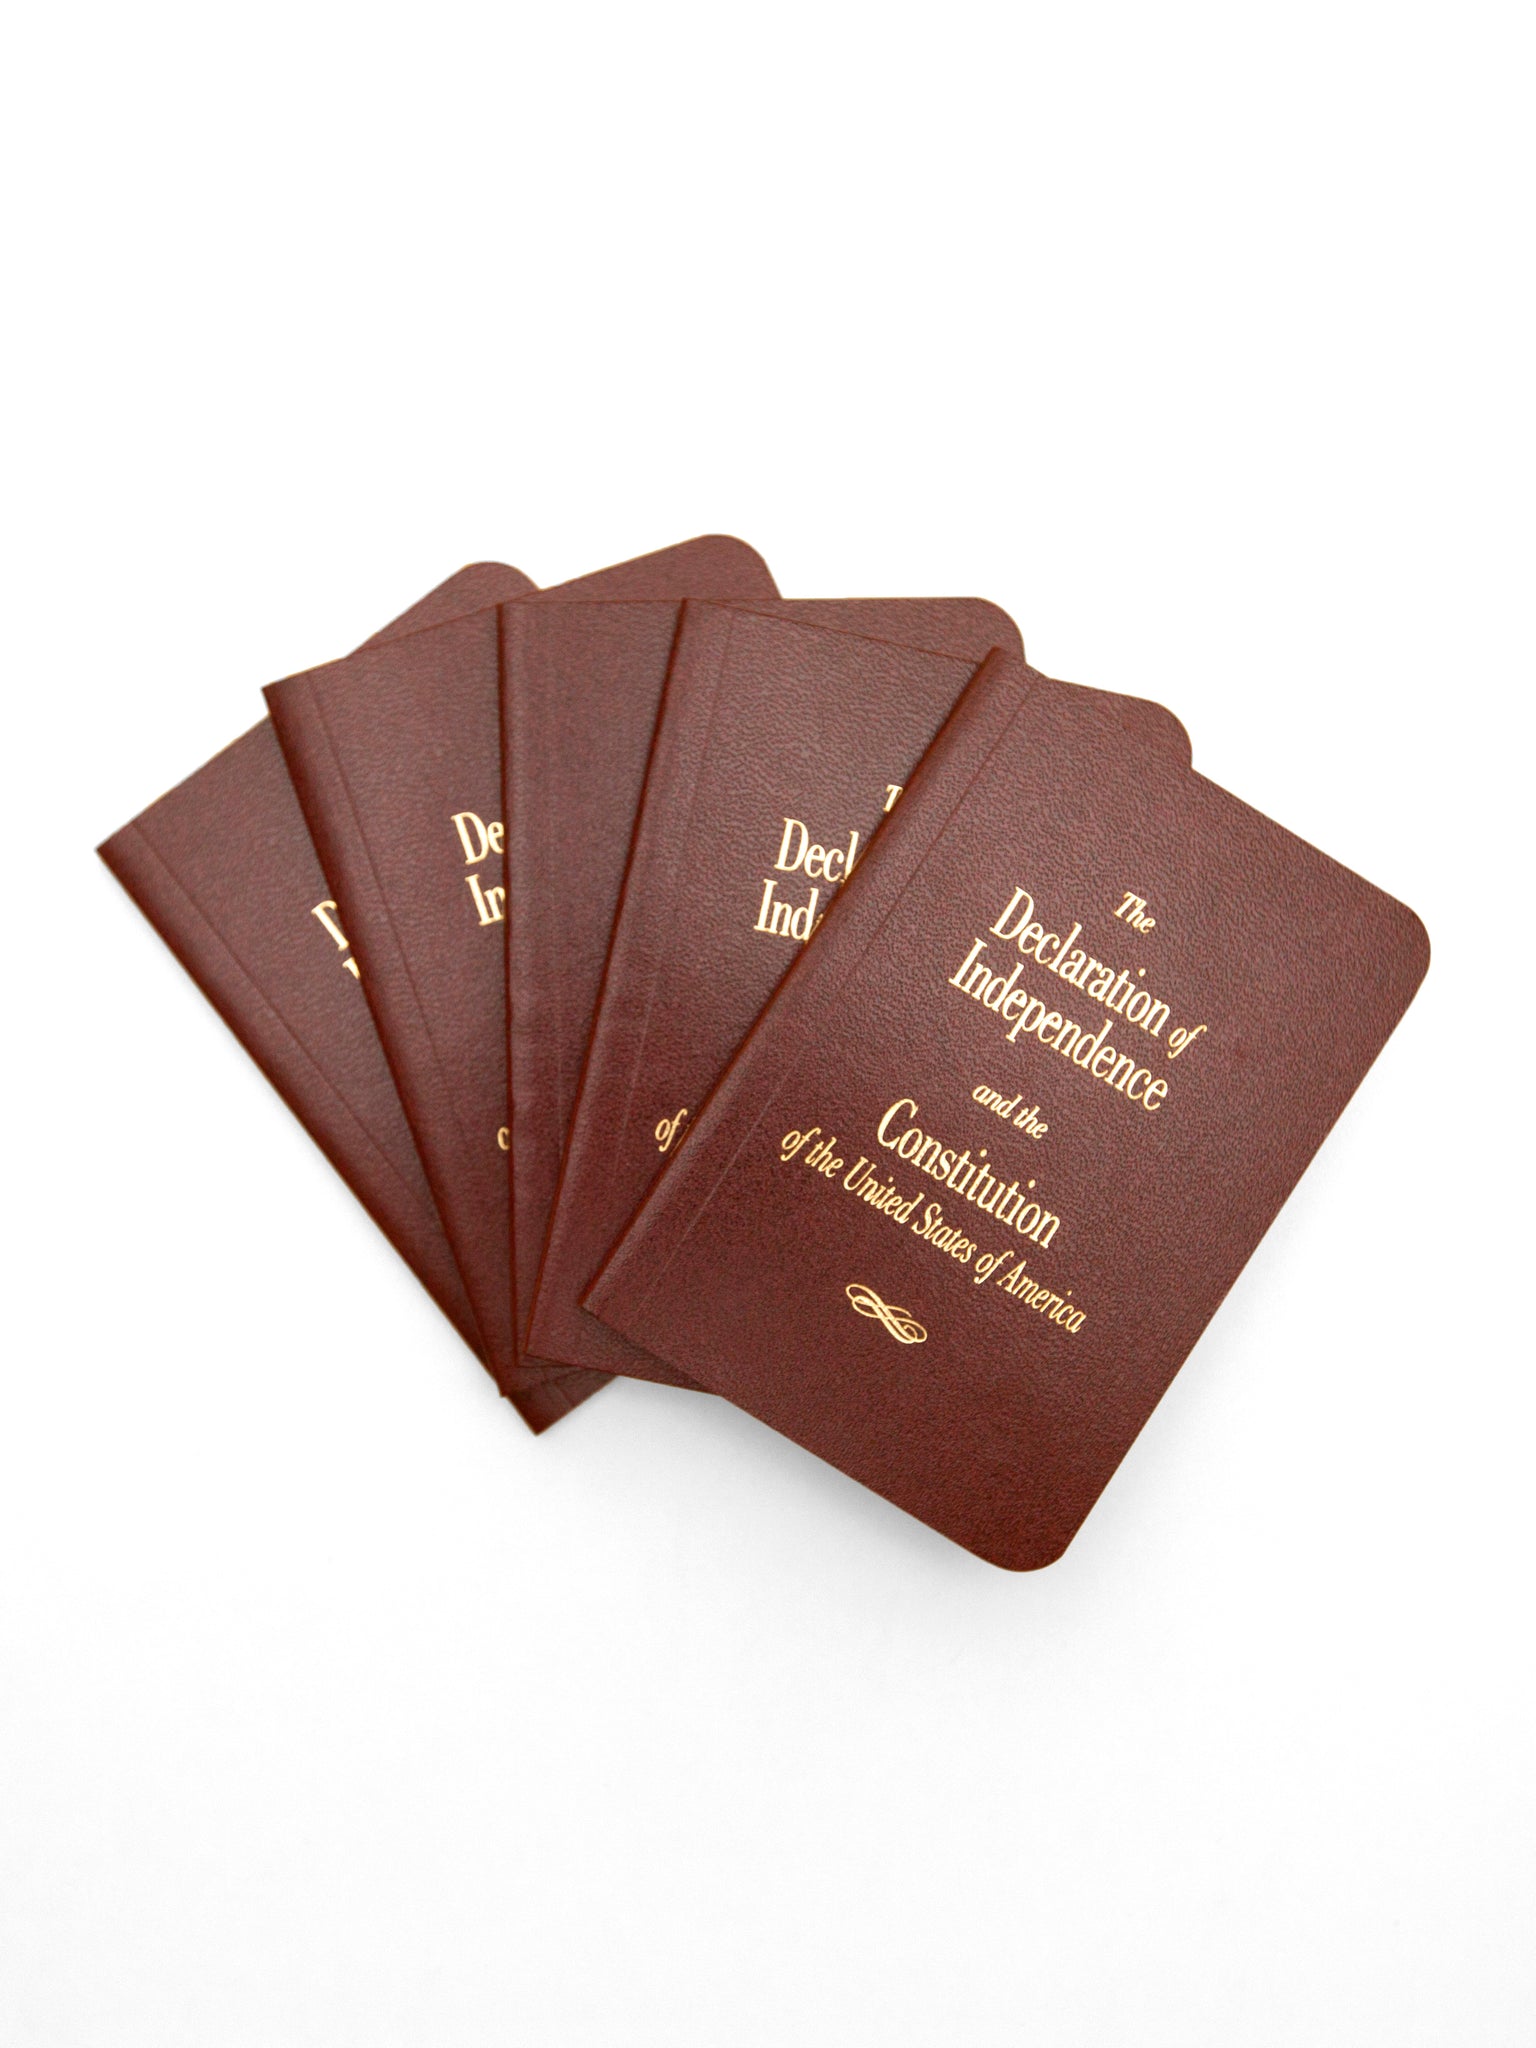 Pocket Constitution (single copies) – Cato Institute